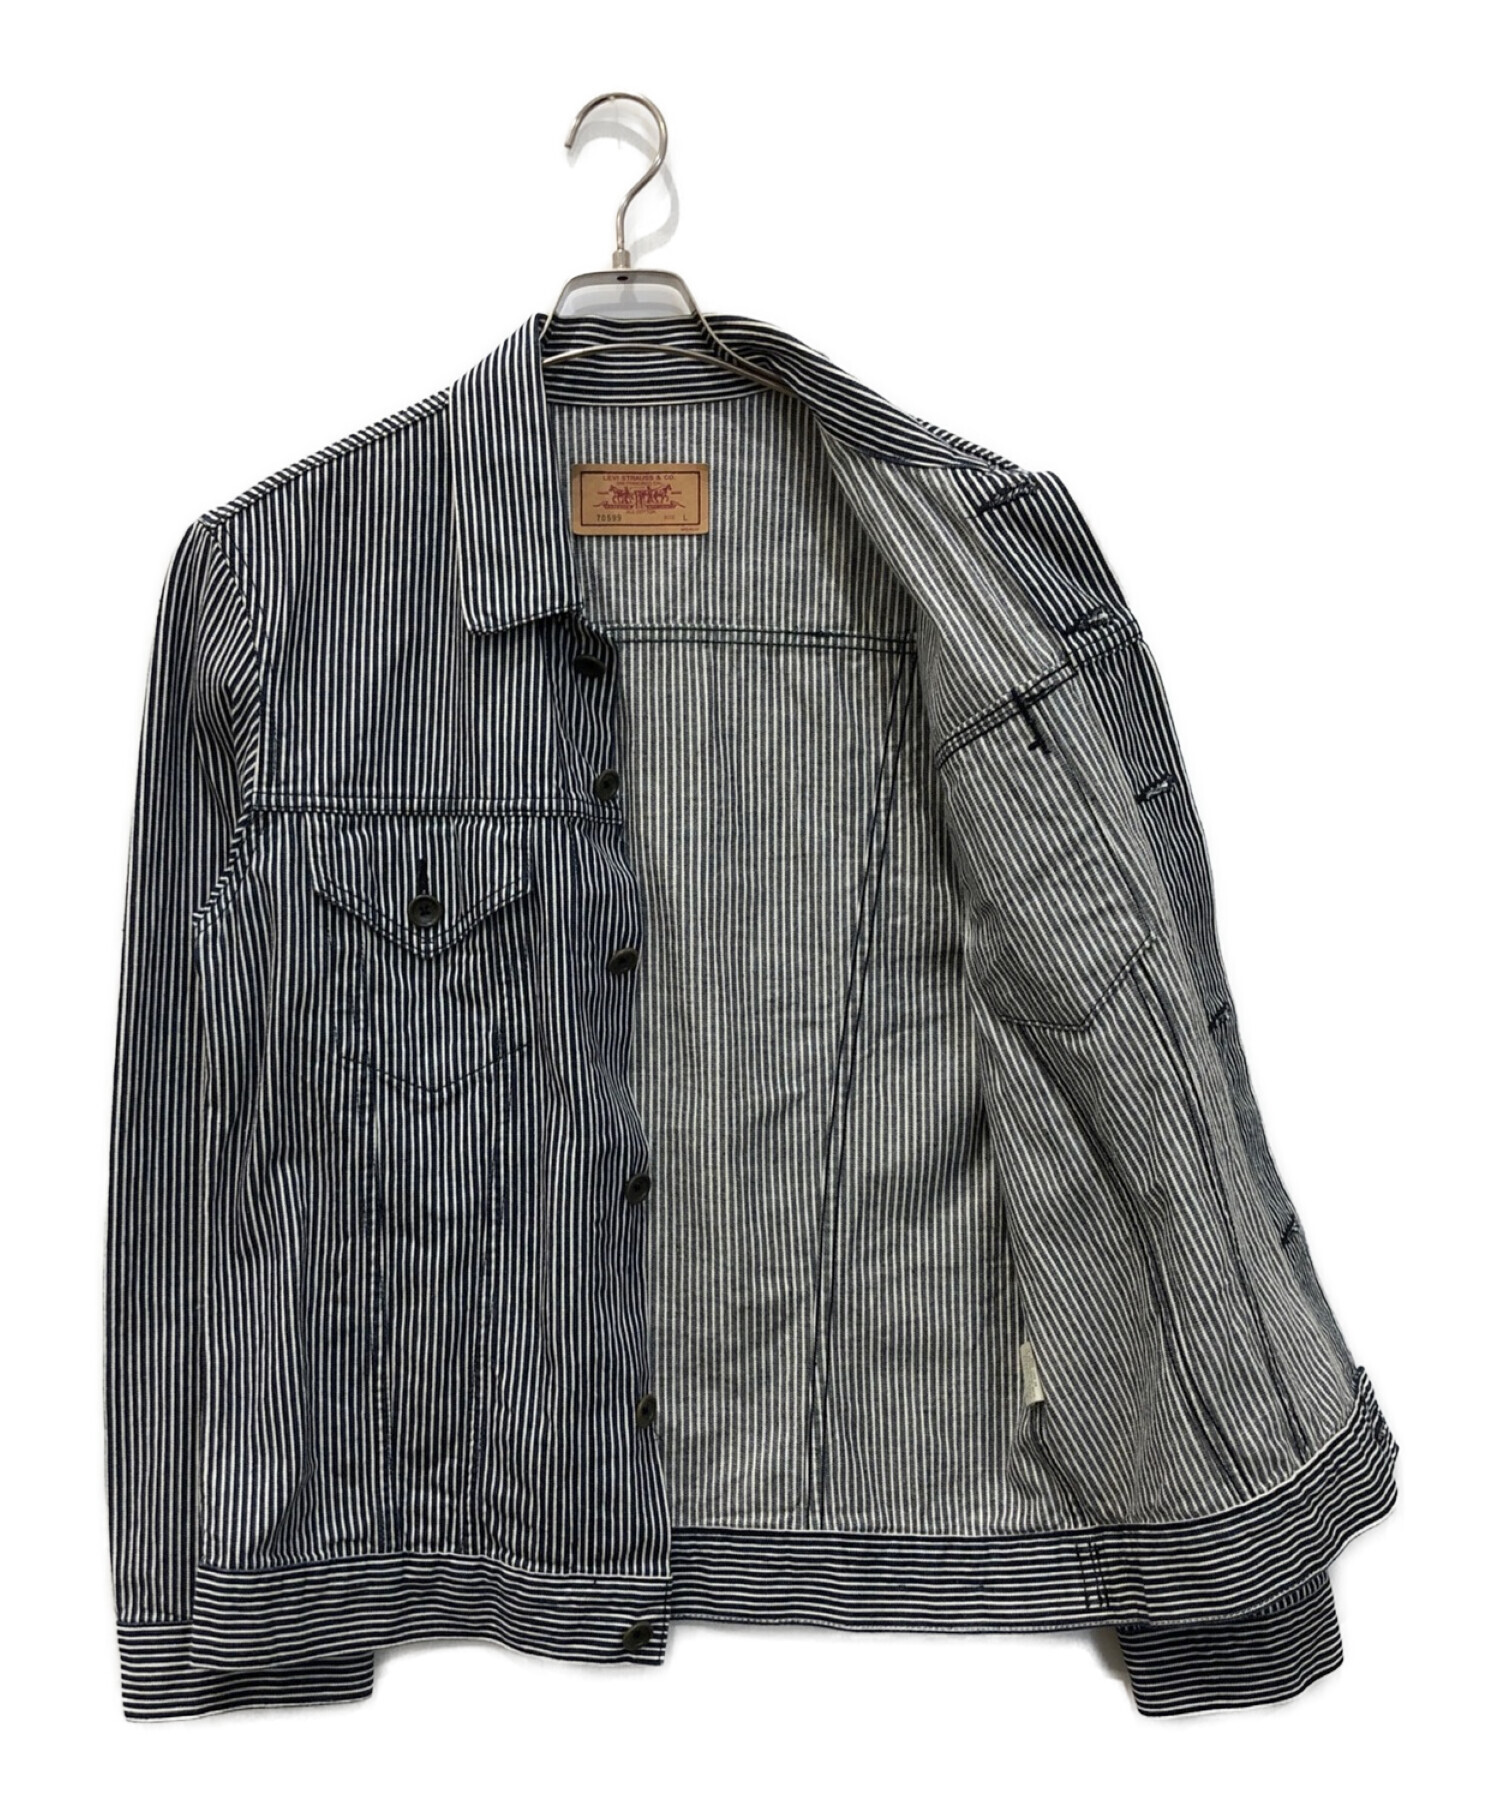 LEVI'S (リーバイス) ヒッコリーストライプデニムジャケット ブラック サイズ:Ⅼ